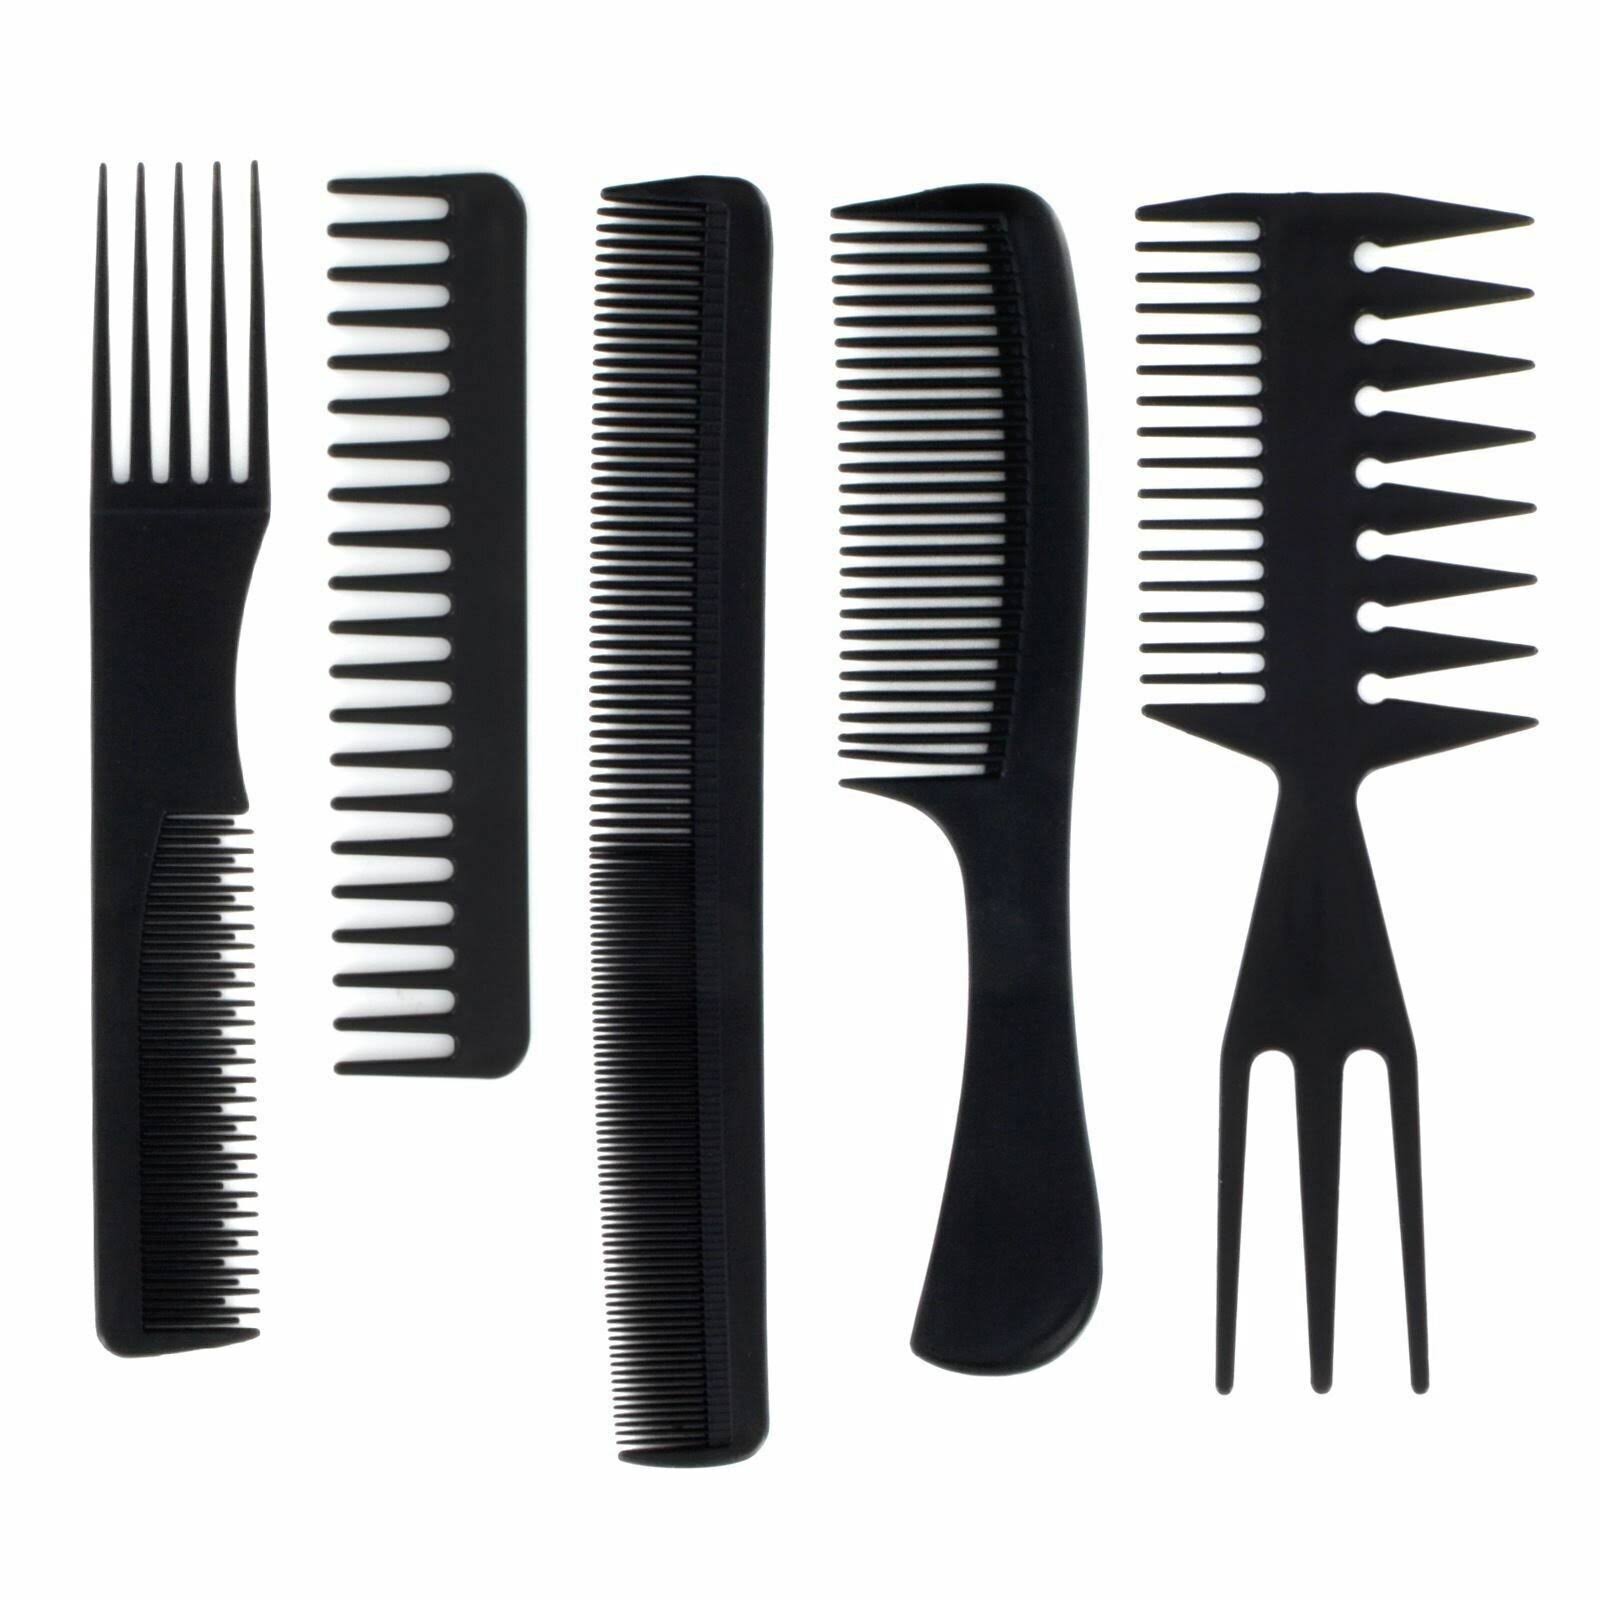 Enrico Salon Stylists Hair Comb Set 5 Piece